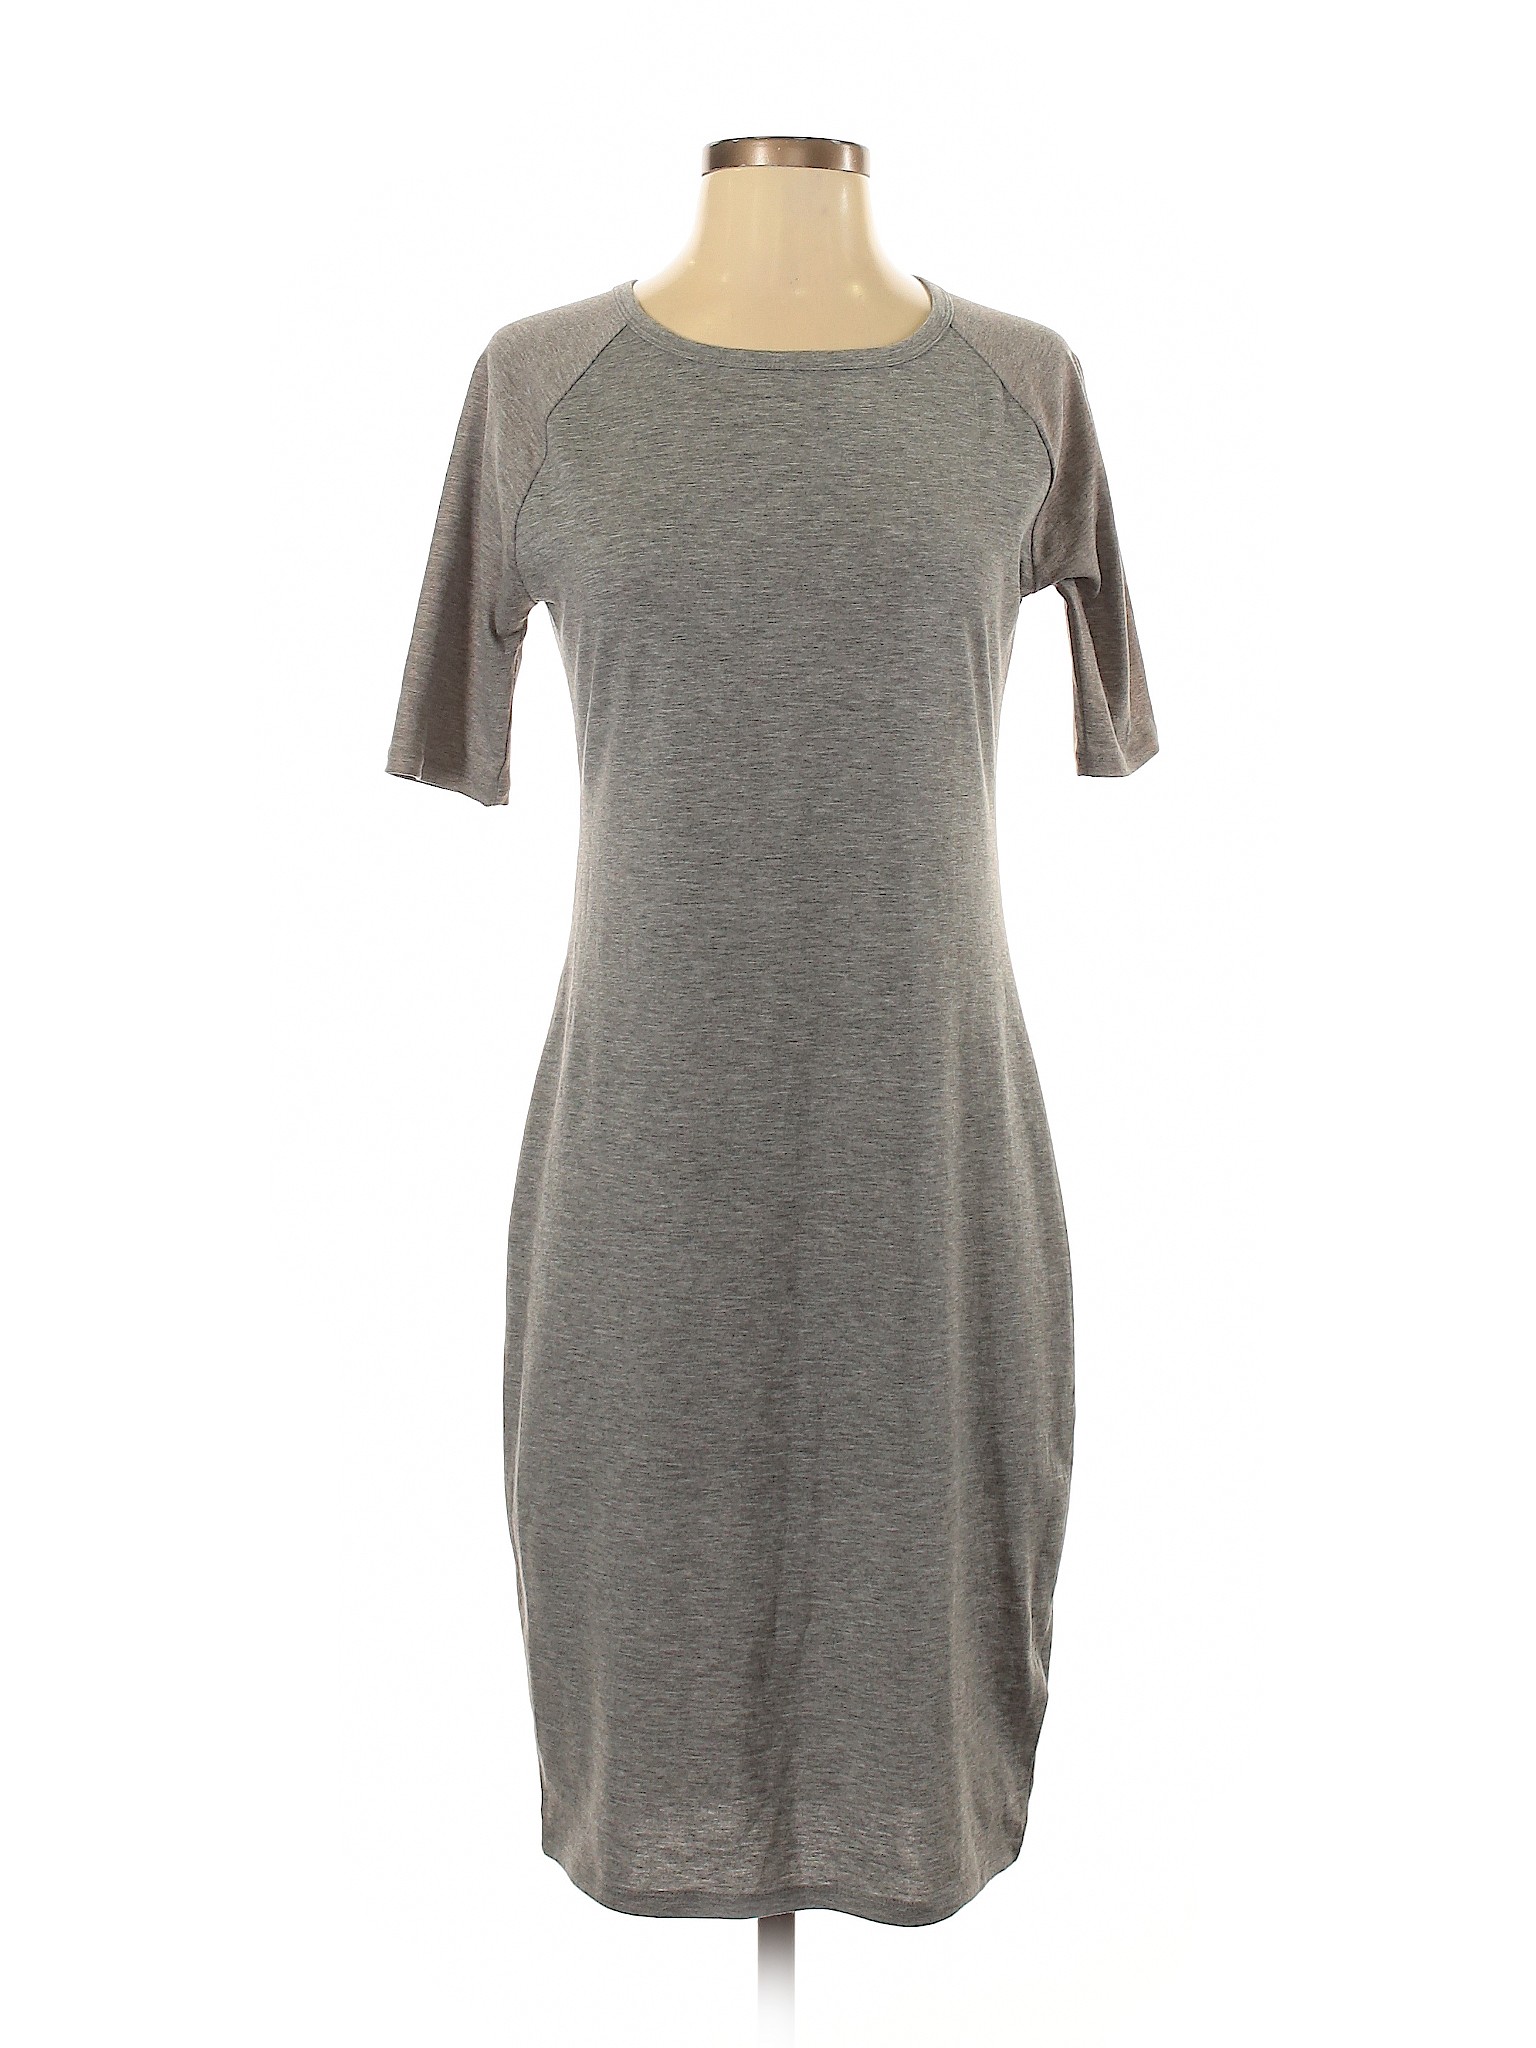 Lularoe Women Gray Casual Dress S | eBay